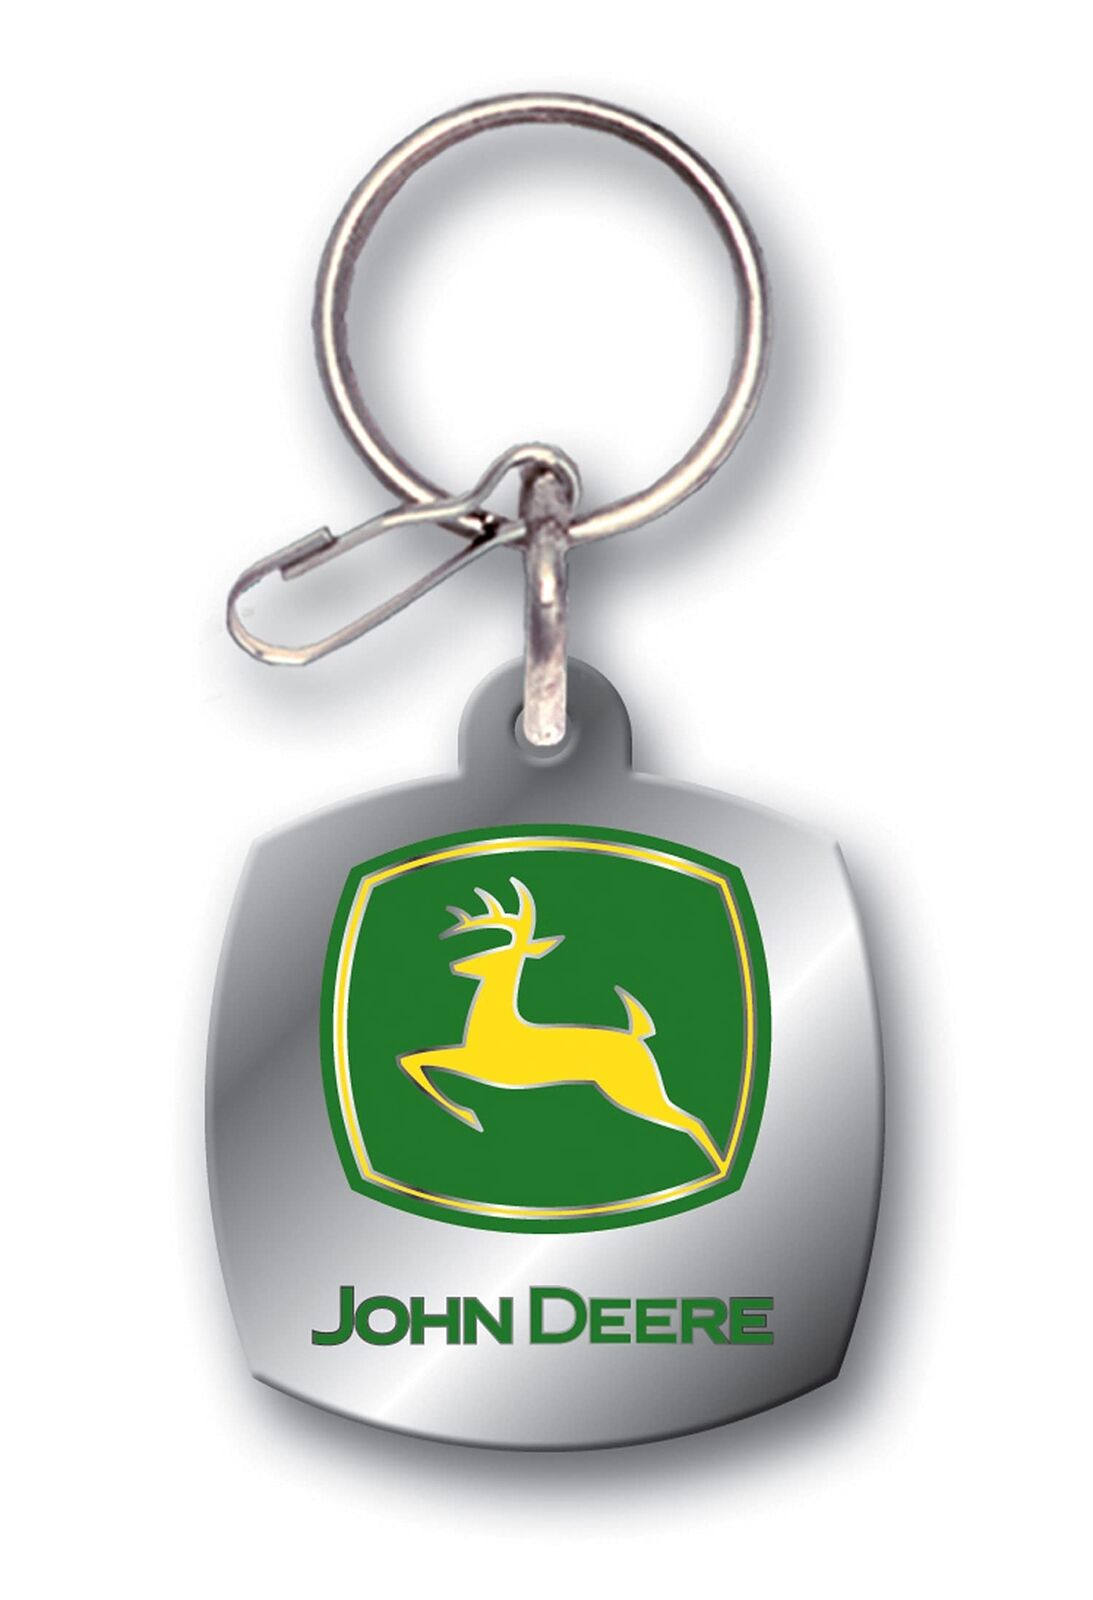  004173R01 Logotipo De John Deere Llavero Esmaltado, Plateado